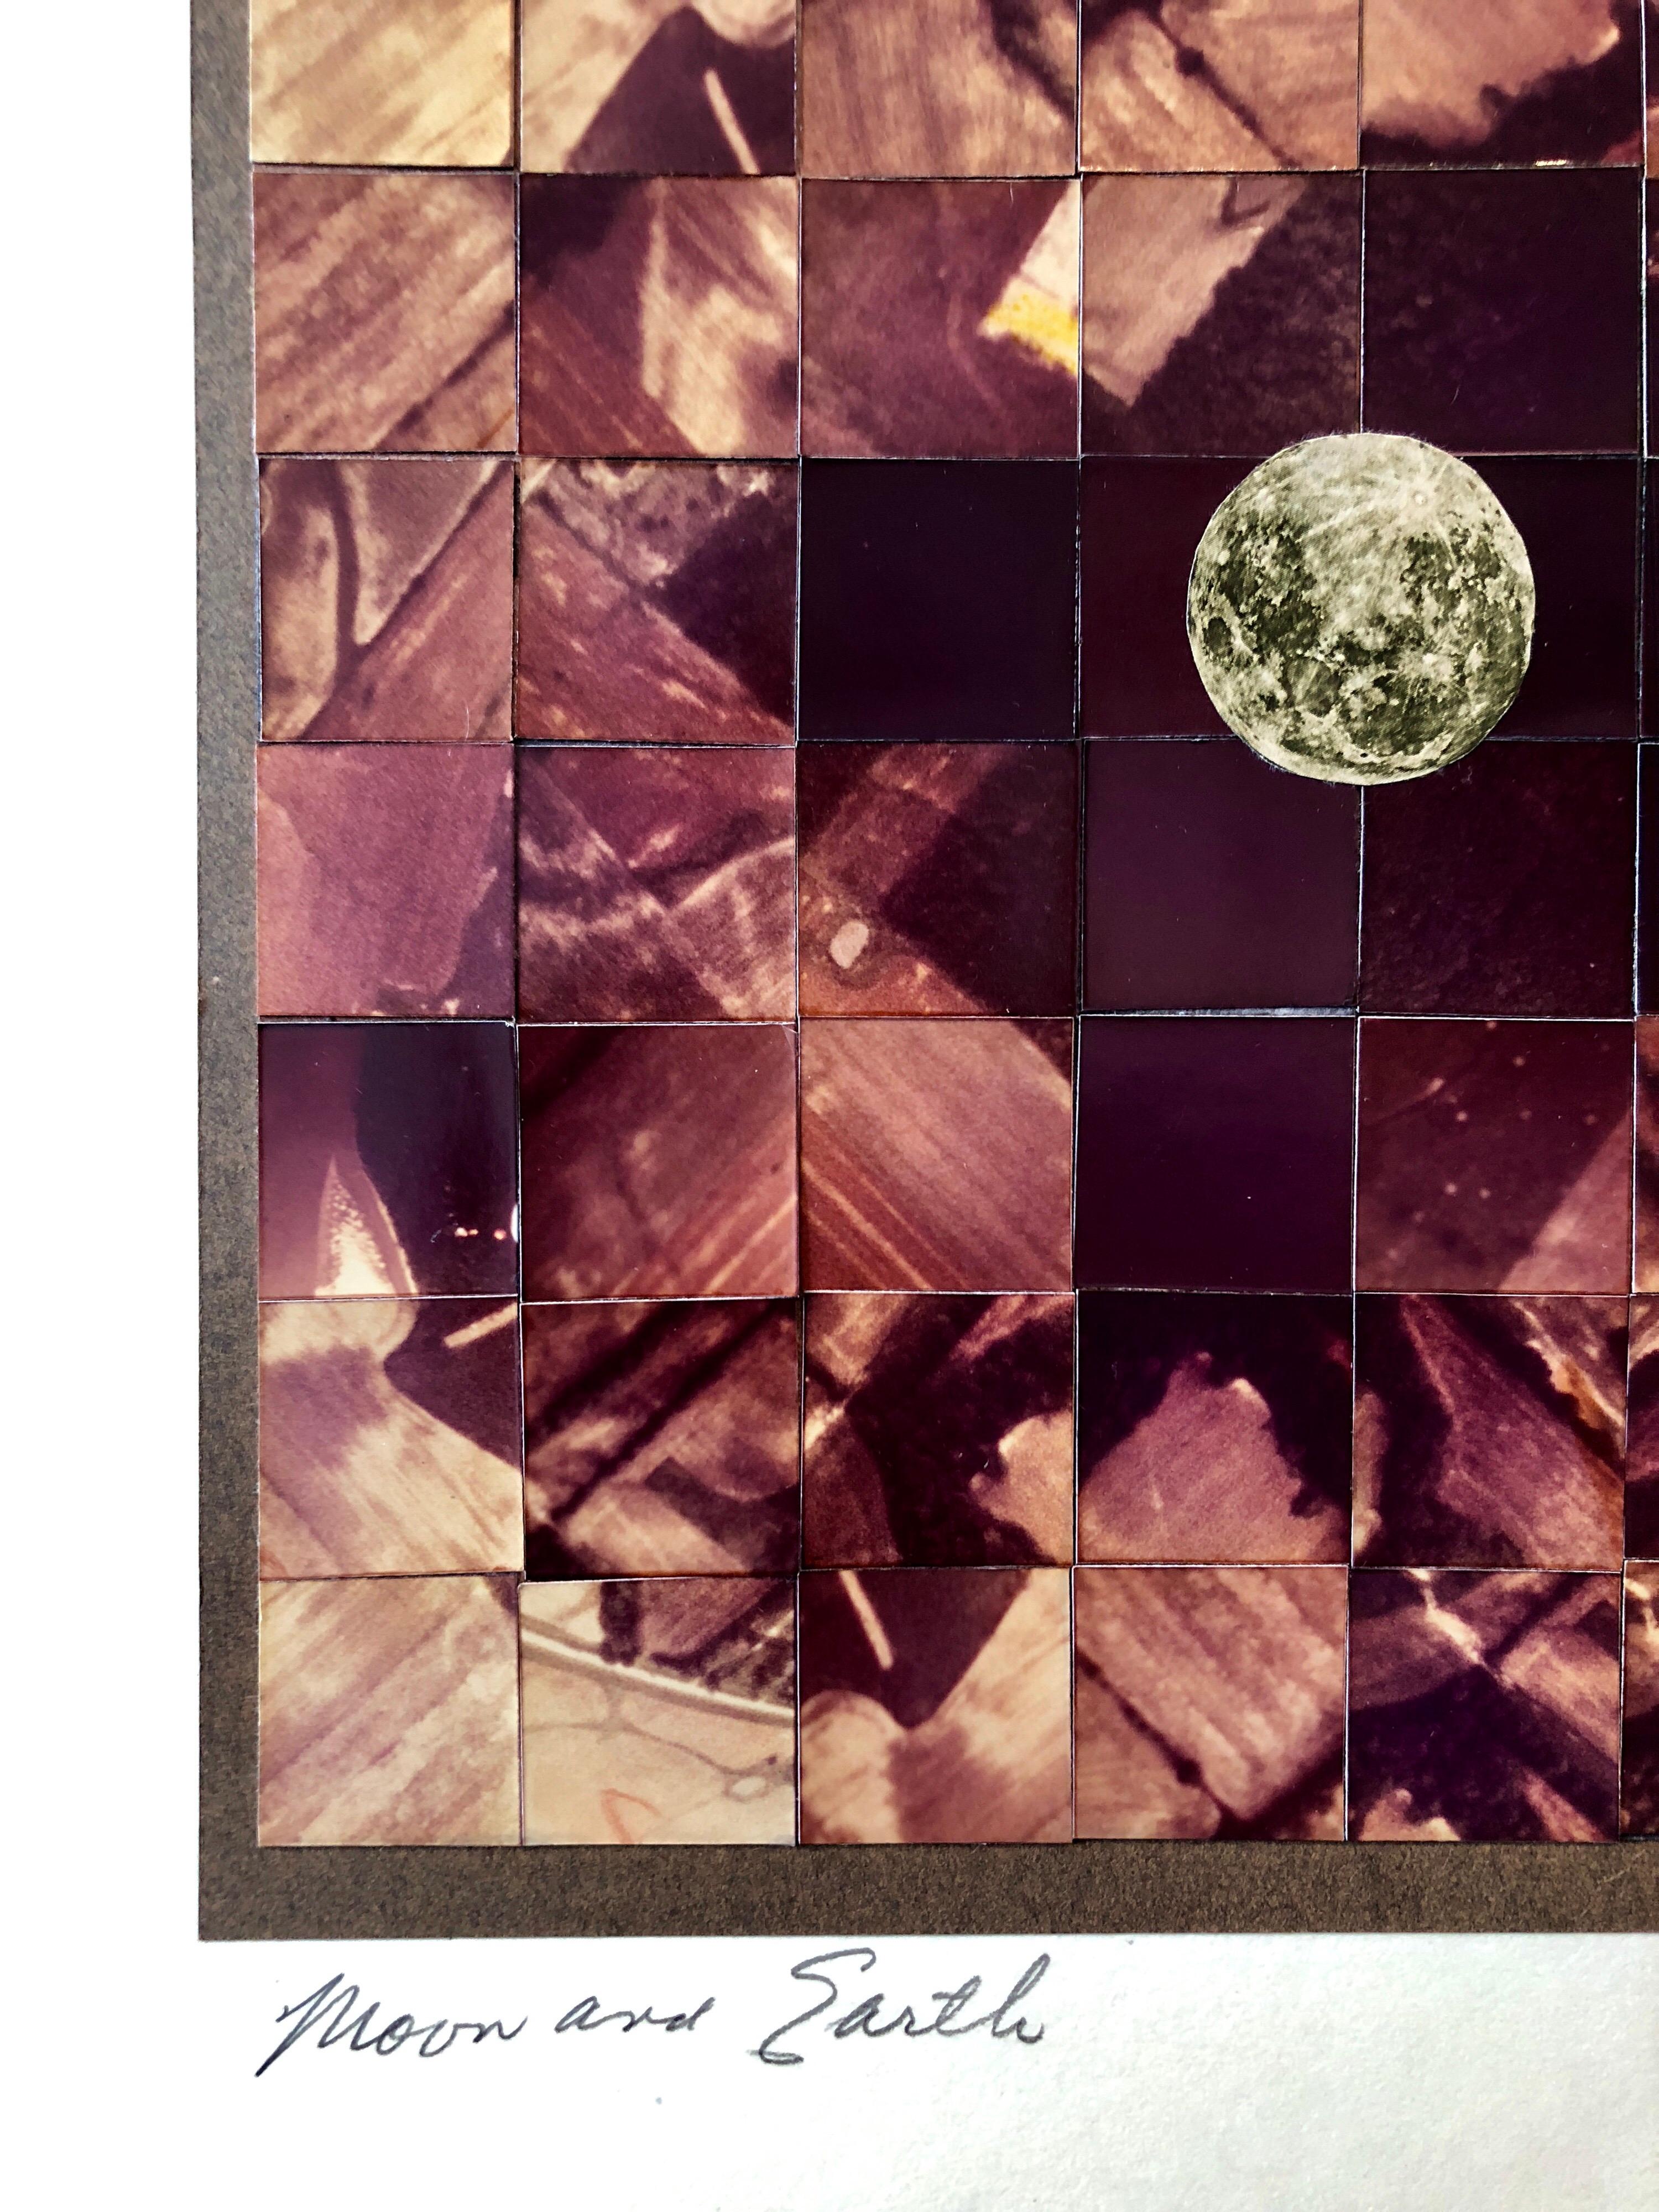 Dieses Bild zeigt fragmentierte Weltraumfotos und trägt den Titel Mond und Erde. Es zeigt einen Blick aus dem Weltraum.

SIMONS, Vera (1920 - 2012)
Vera Habrecht Simons, war eine deutsch-amerikanische Luftfahrtpionierin, Aeronautin und